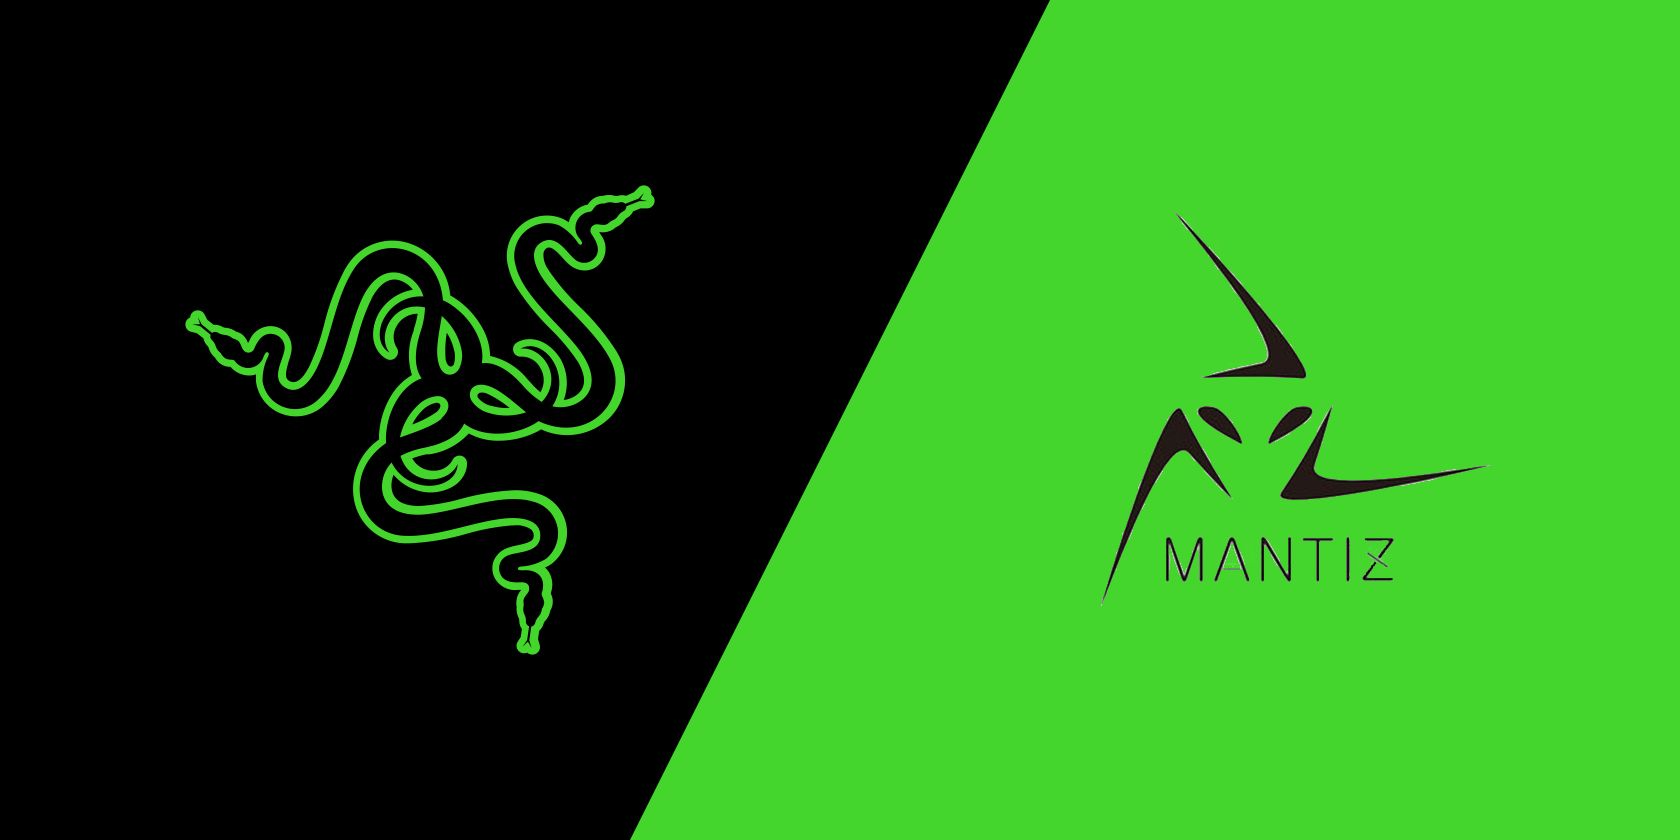 Razer and Mantiz logos side-by-side